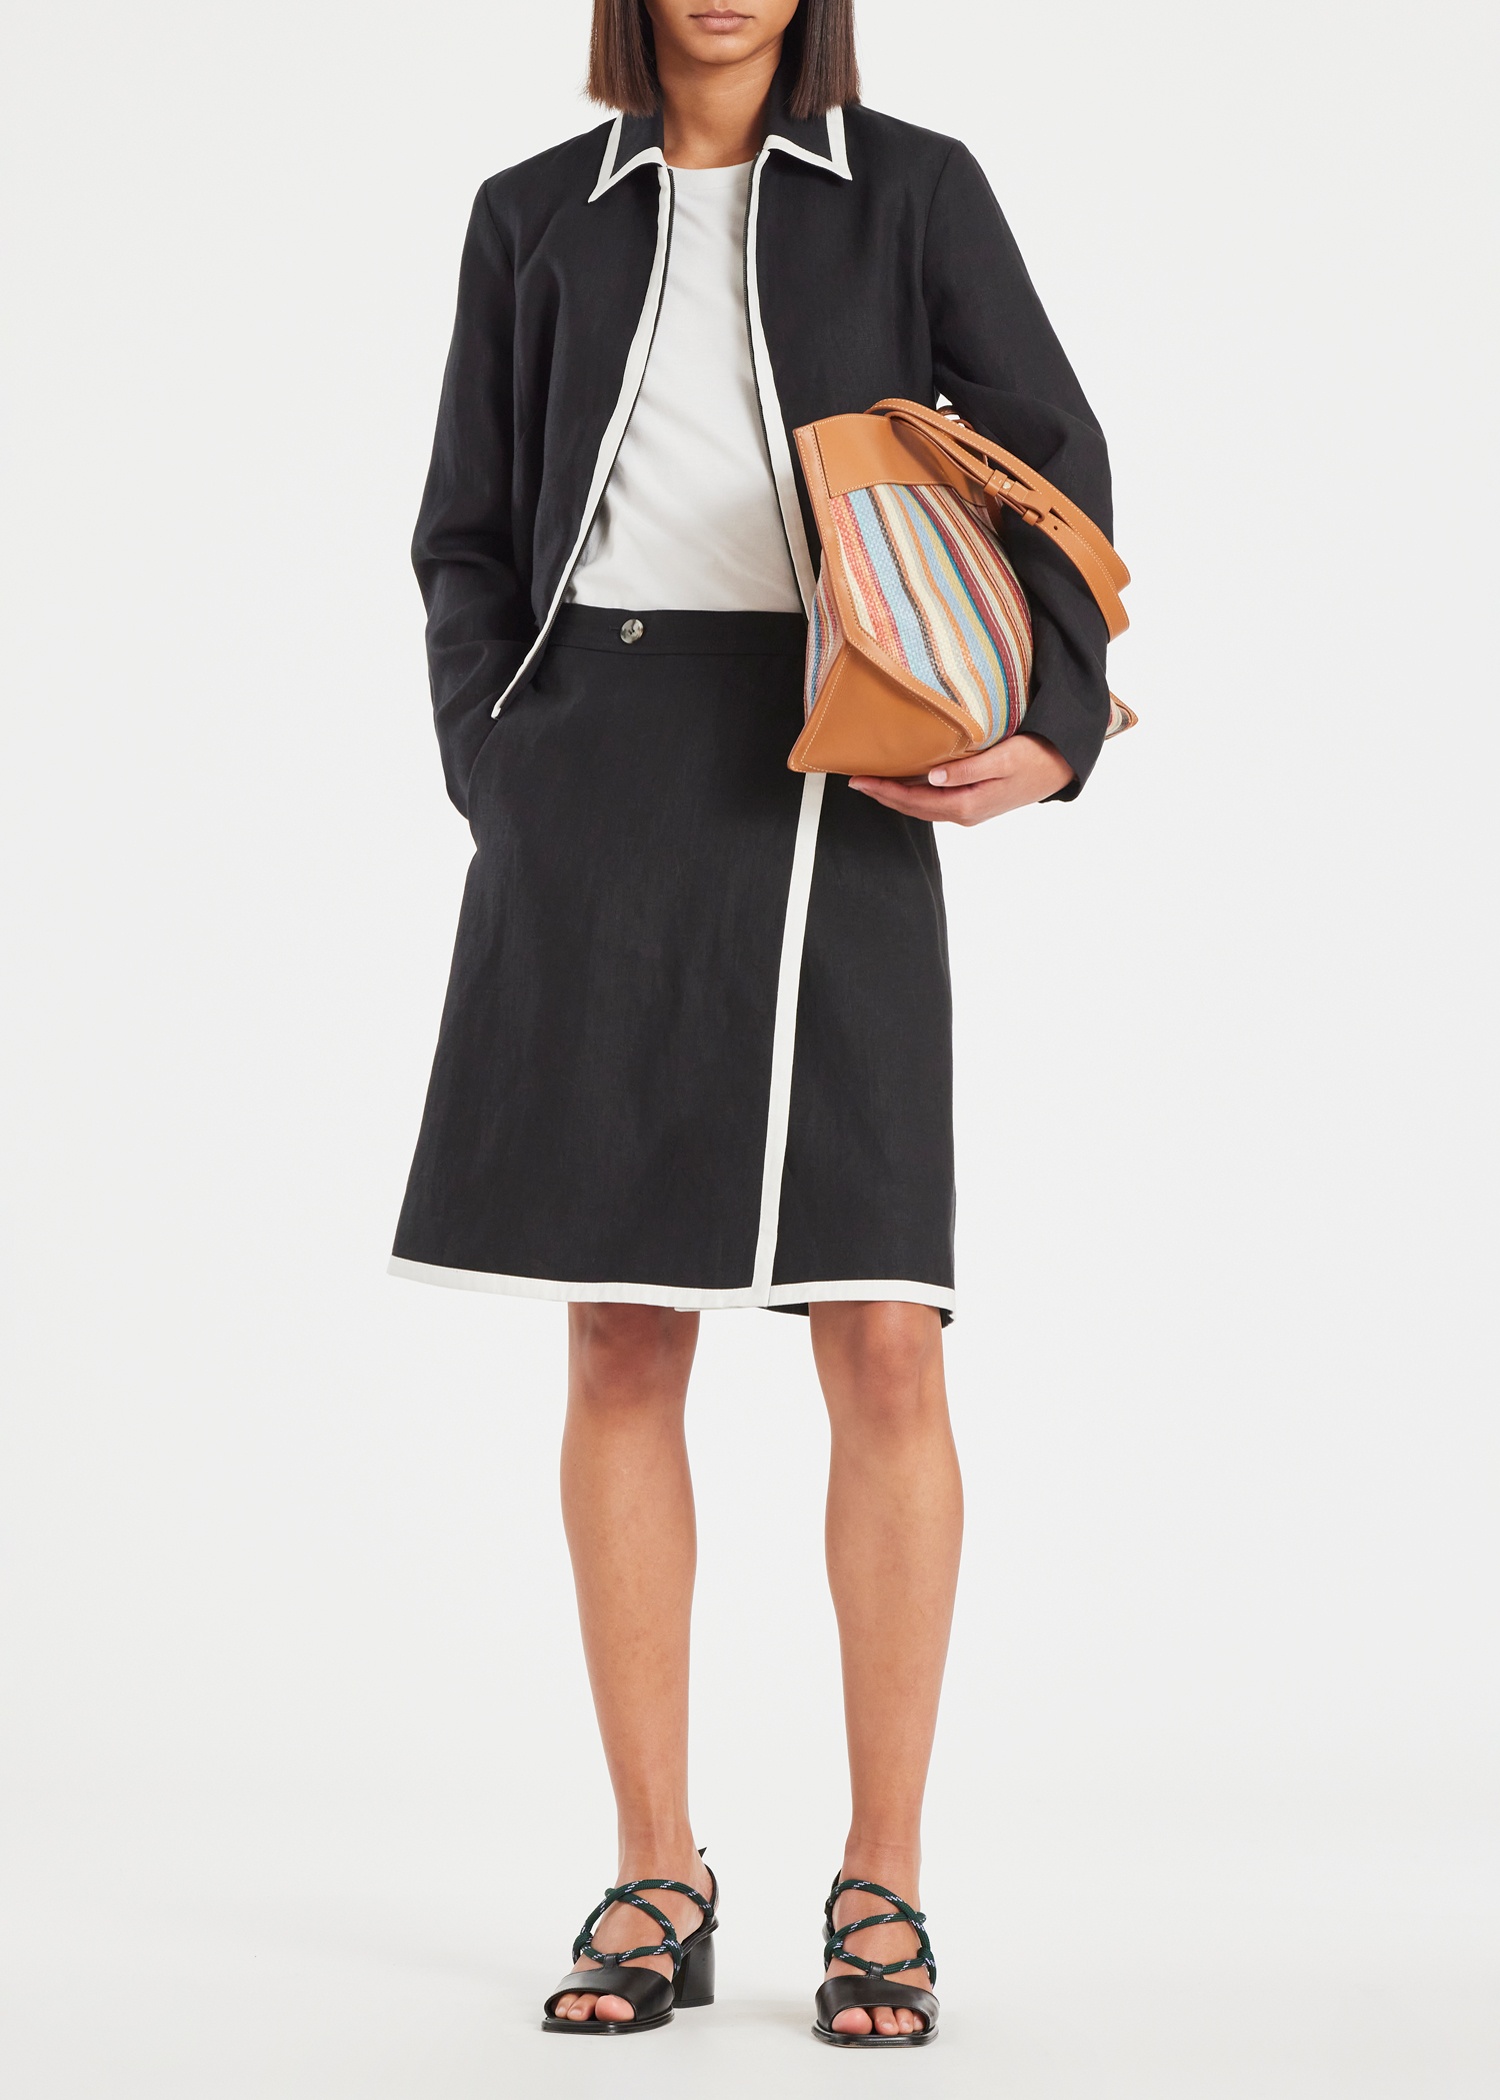 Women's Black Linen Zip Jacket - 5